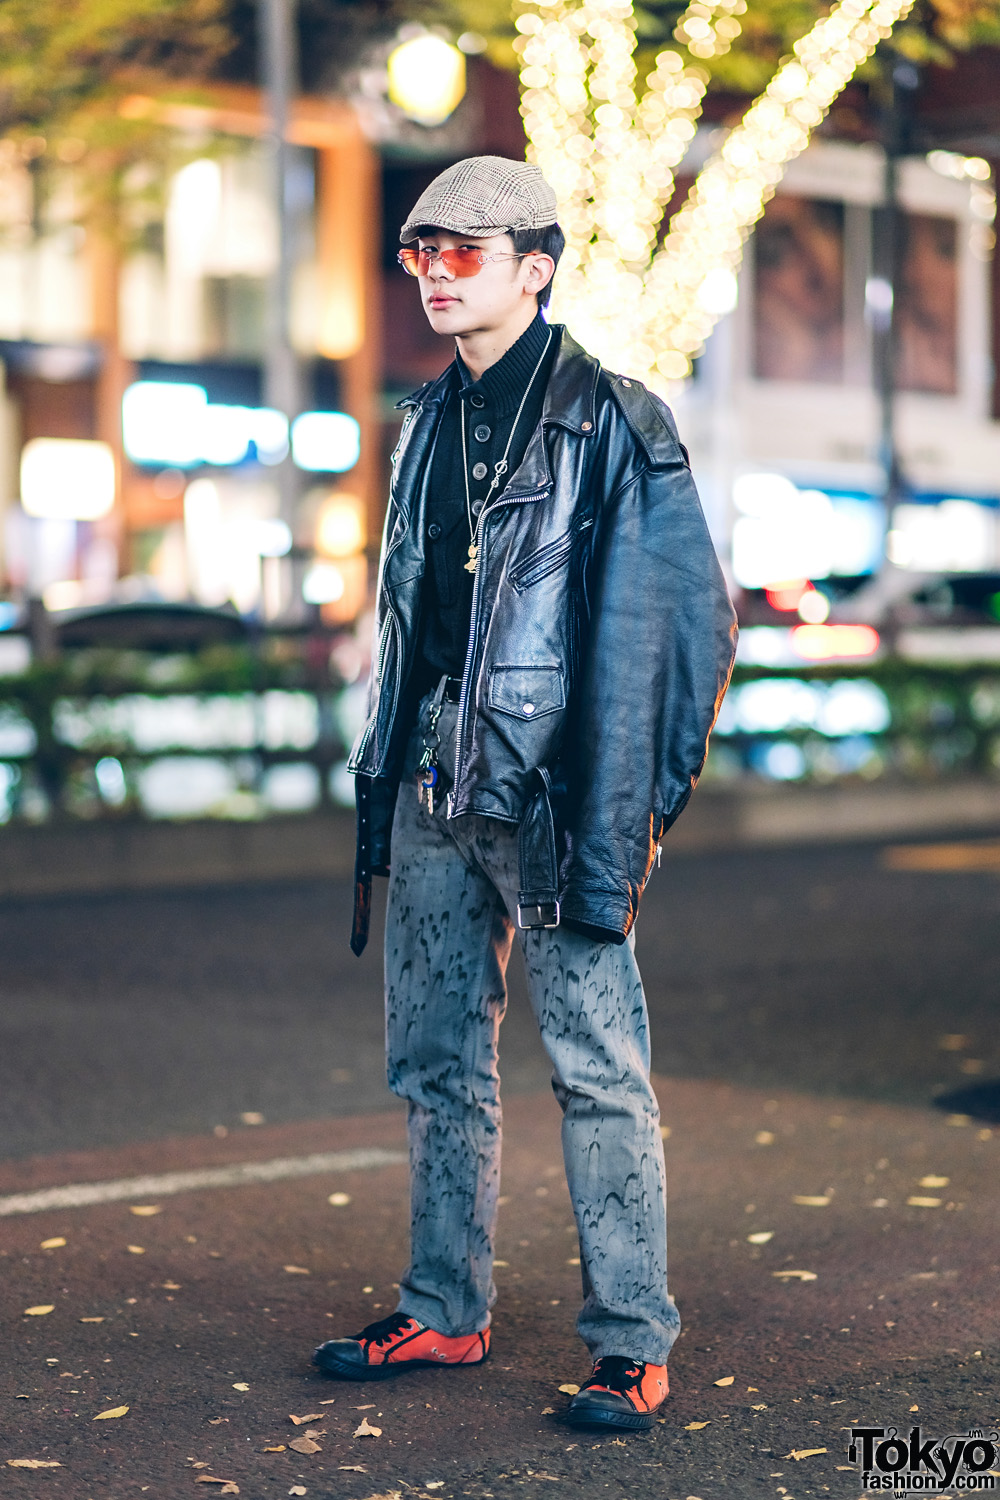 Harajuku Teen Street Style w/ Newsboy Cap, Motorcycle Jacket, Levi's Printed Jeans & Diesel Sneakers